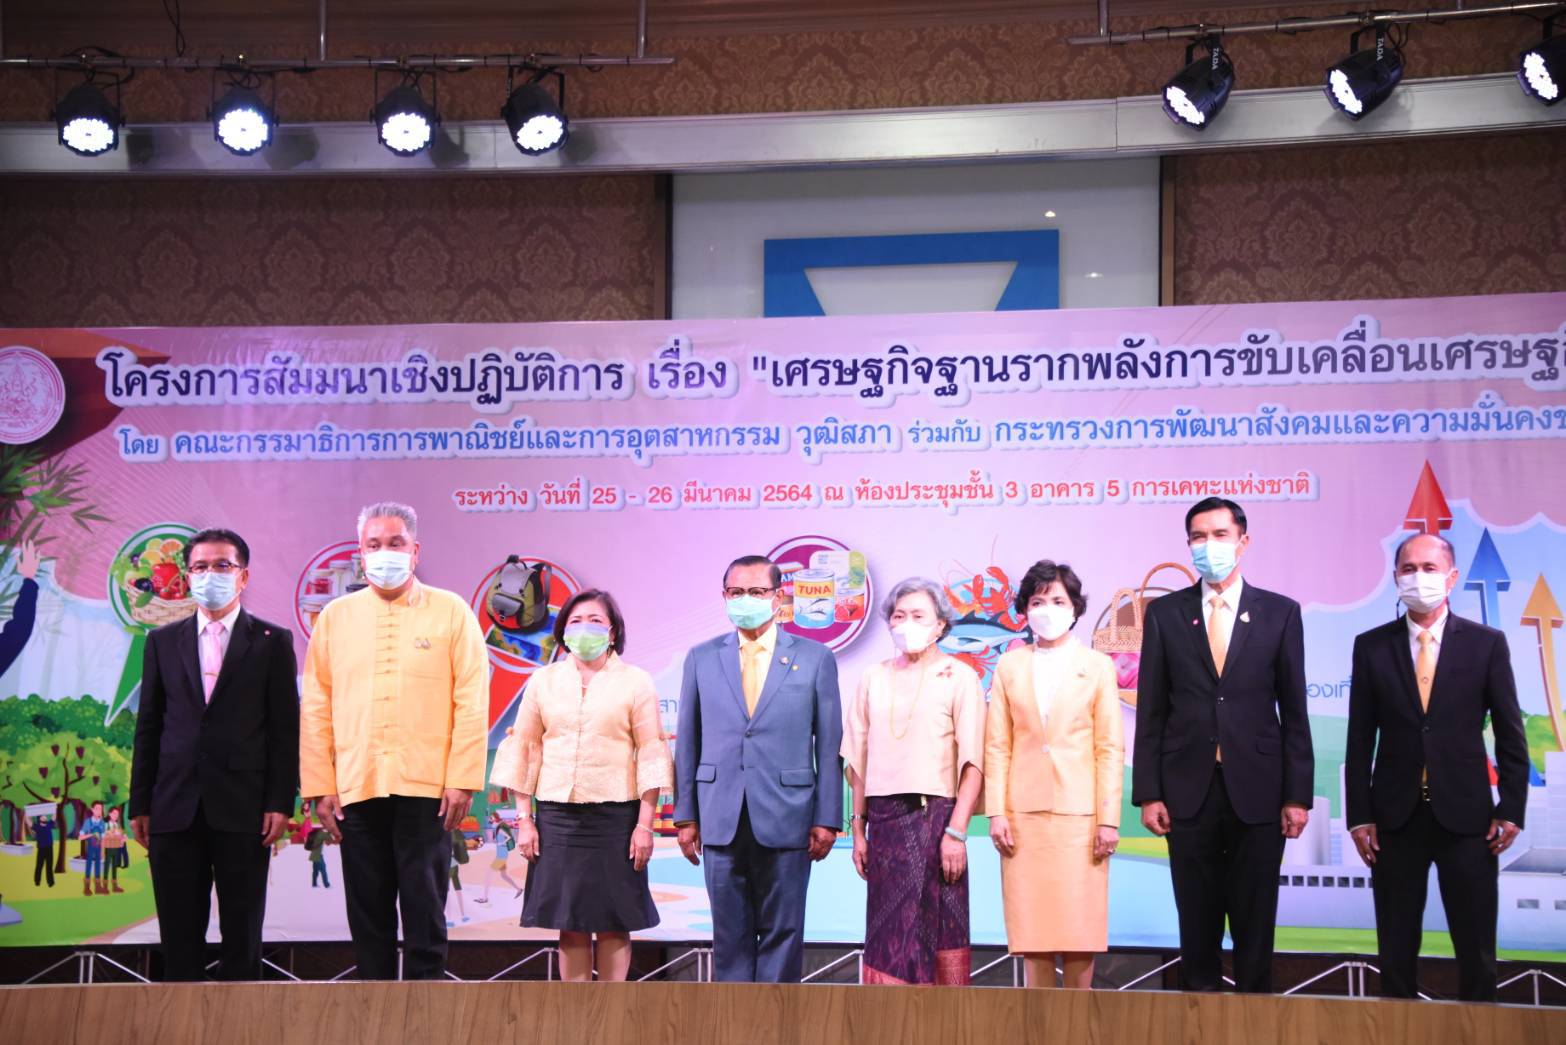 พิธีเปิดการสัมมนาเชิงปฏิบัติการ เรื่อง เศรษฐกิจฐานรากพลังการขับเคลื่อนเศรษฐกิจไทย